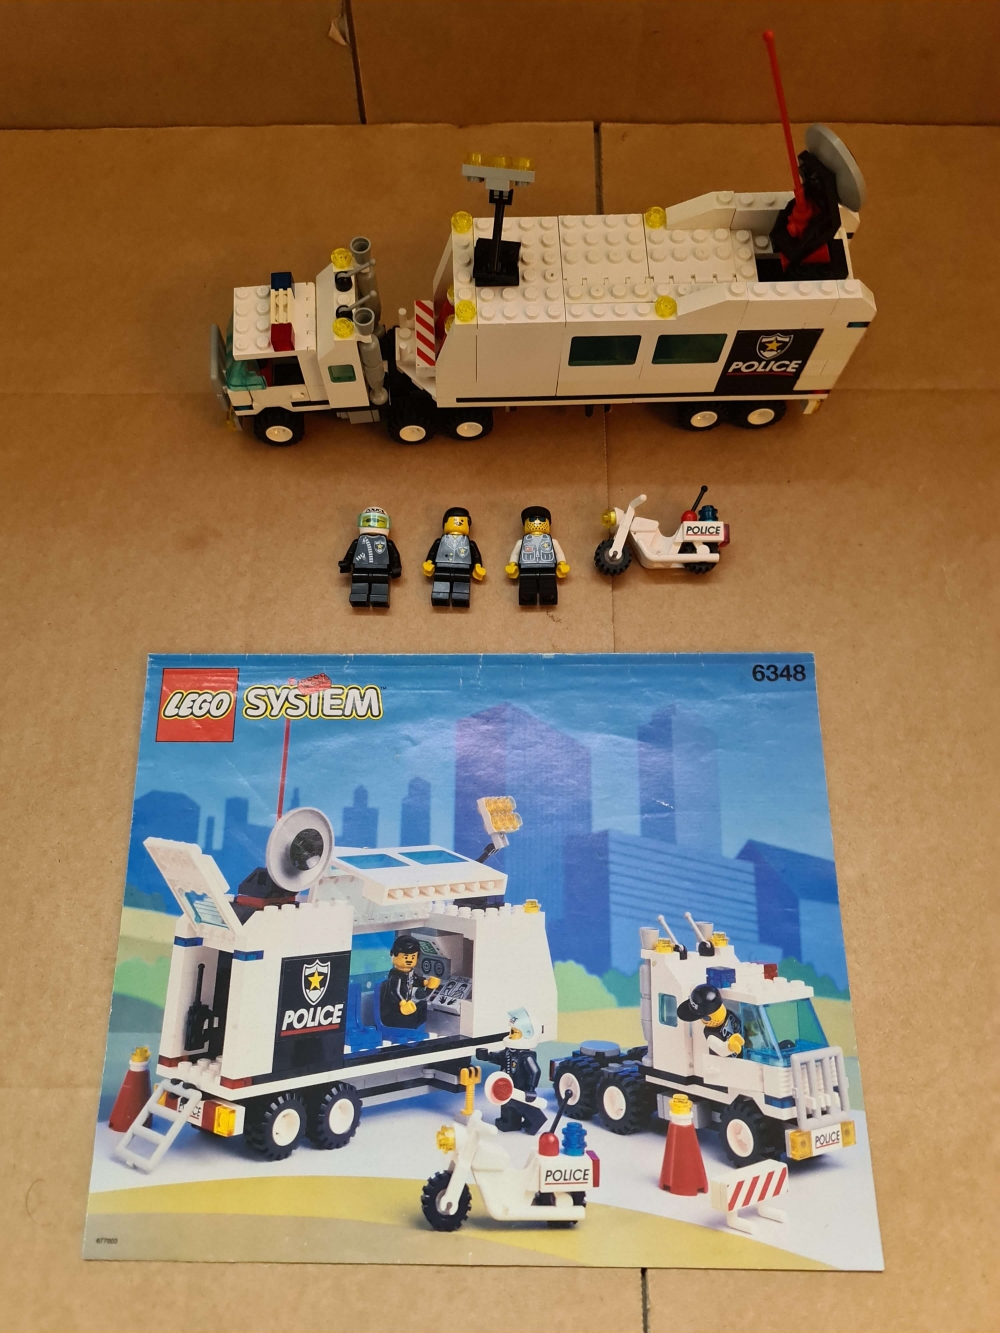 Sett 6348 fra Lego CLassic Town serien.
Fint sett. Antydning til noe gulning på enkelte brikker. Se bilder.
Komplett med manual.